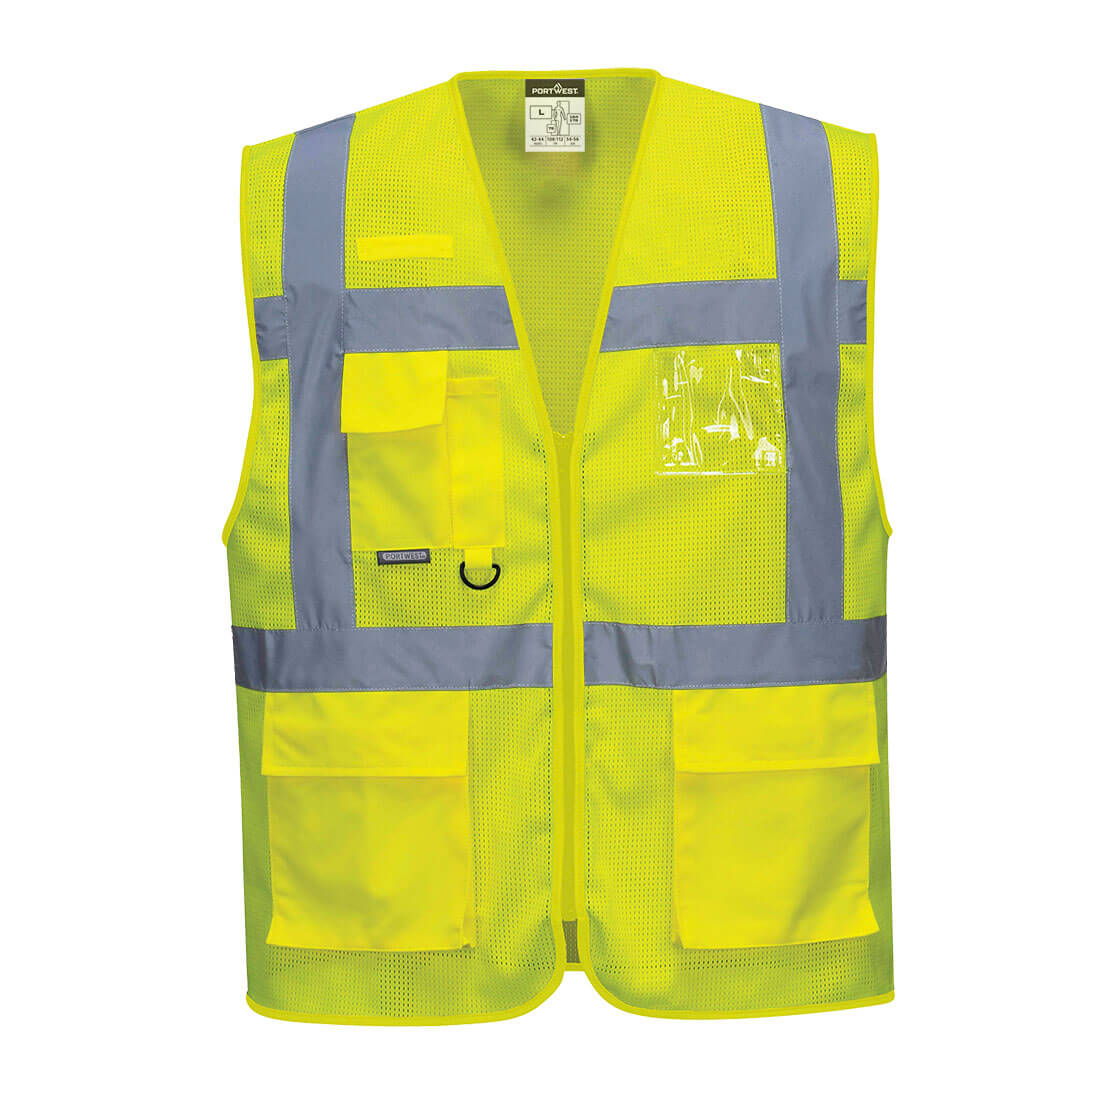 Athens MeshAir Executive Vest Size XXXL Yellow